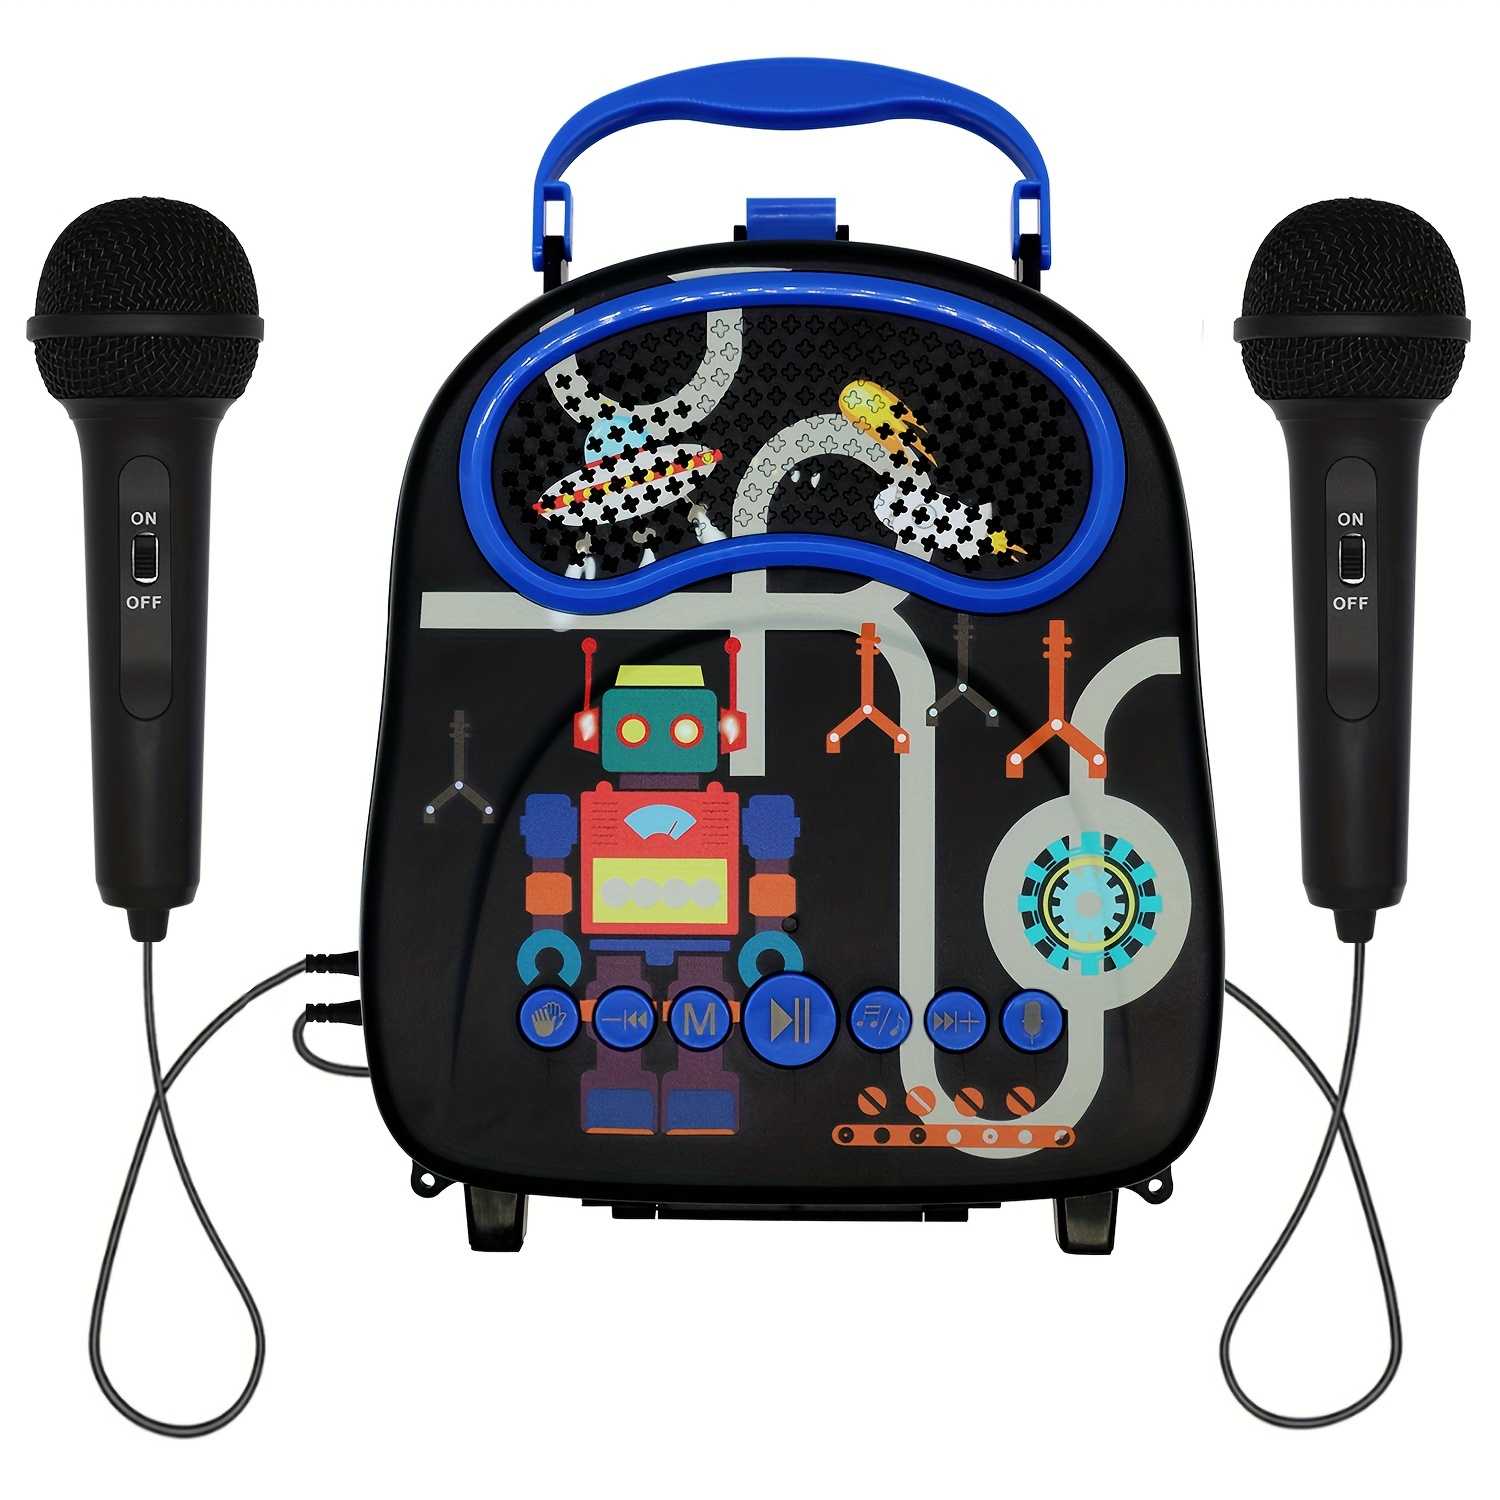 K12 Mini Máquina De Karaoke Con 2 Micrófonos Inalámbricos - Temu